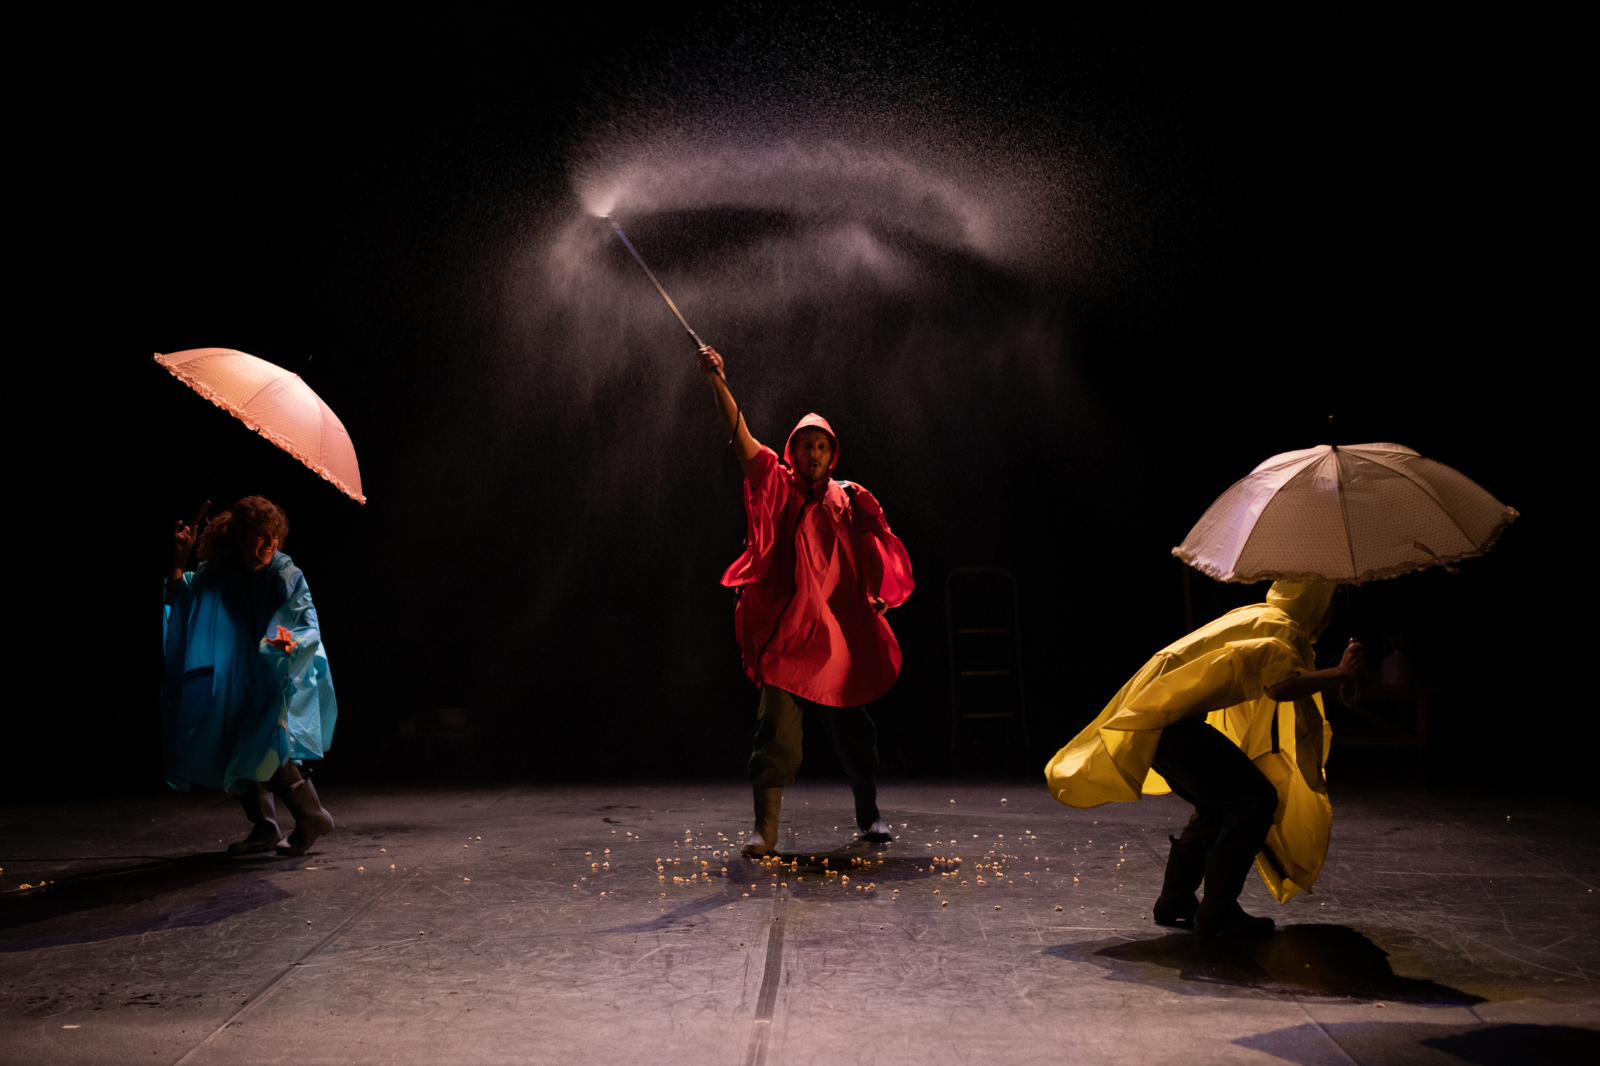 In foto, un uomo con impermeabile rosso agita una bacchetta che spruzza acqua. Vicino a lui altre due persone con impermeabili e ombrelli.